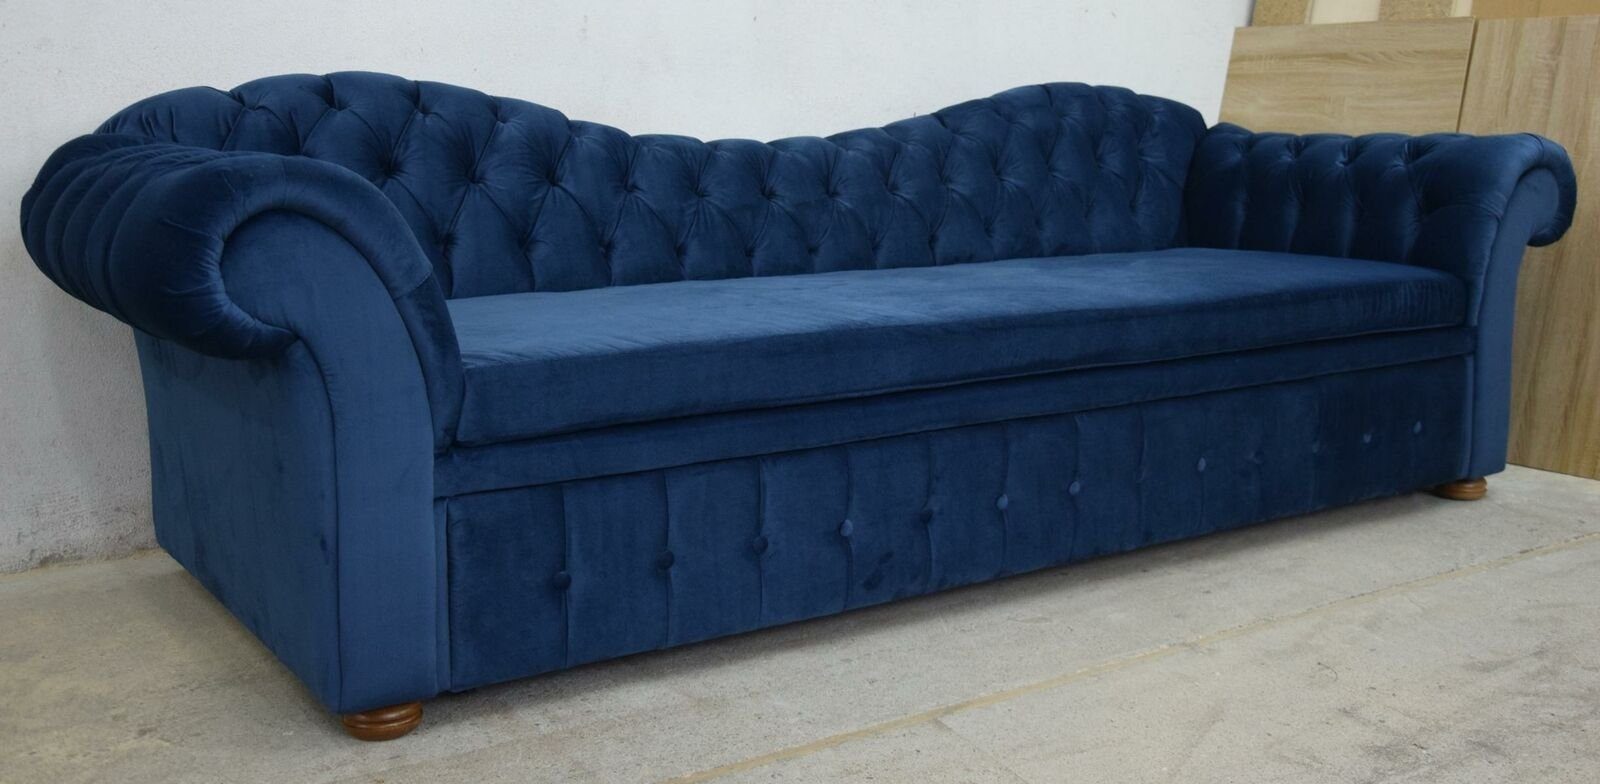 JVmoebel 3-Sitzer Design Chesterfield Sofagarnitur 3Sitzer Textil Couch Polster Sofas, Made in Europe